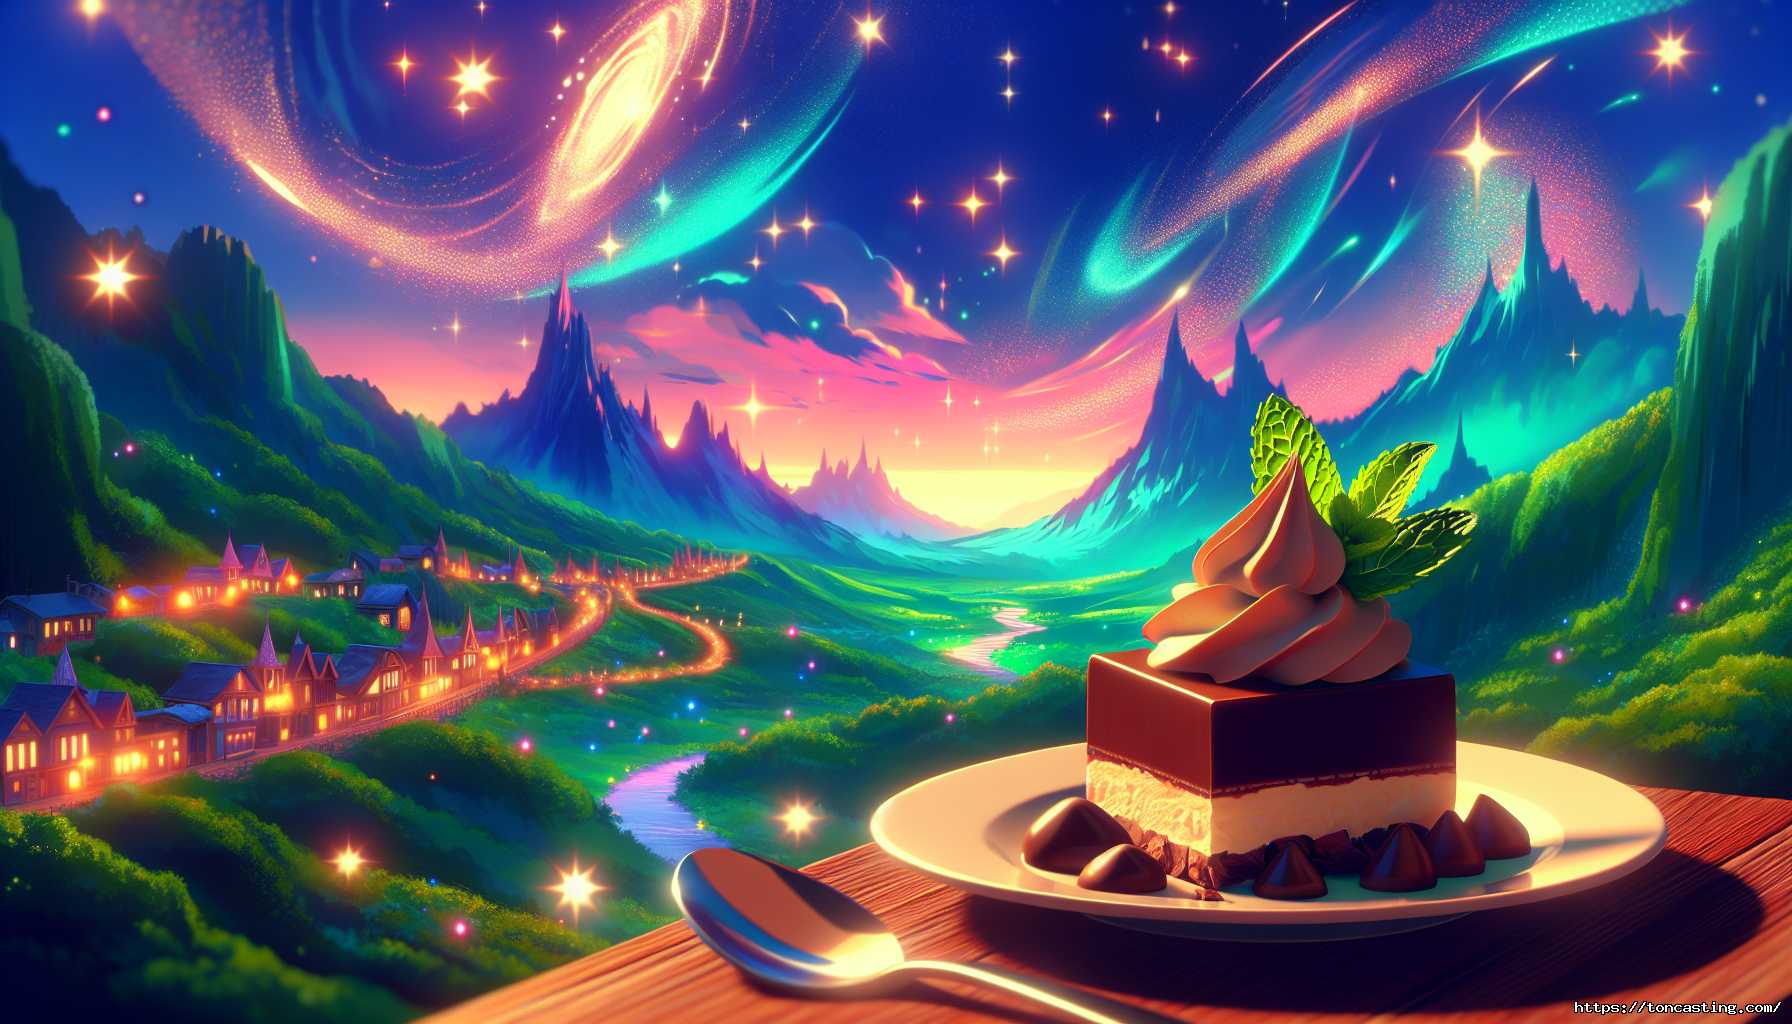 Recette du Chocolat à la Menthe dans Disney Dreamlight Valley : Guide Complet pour la Préparation et la Recherche d'Ingrédients